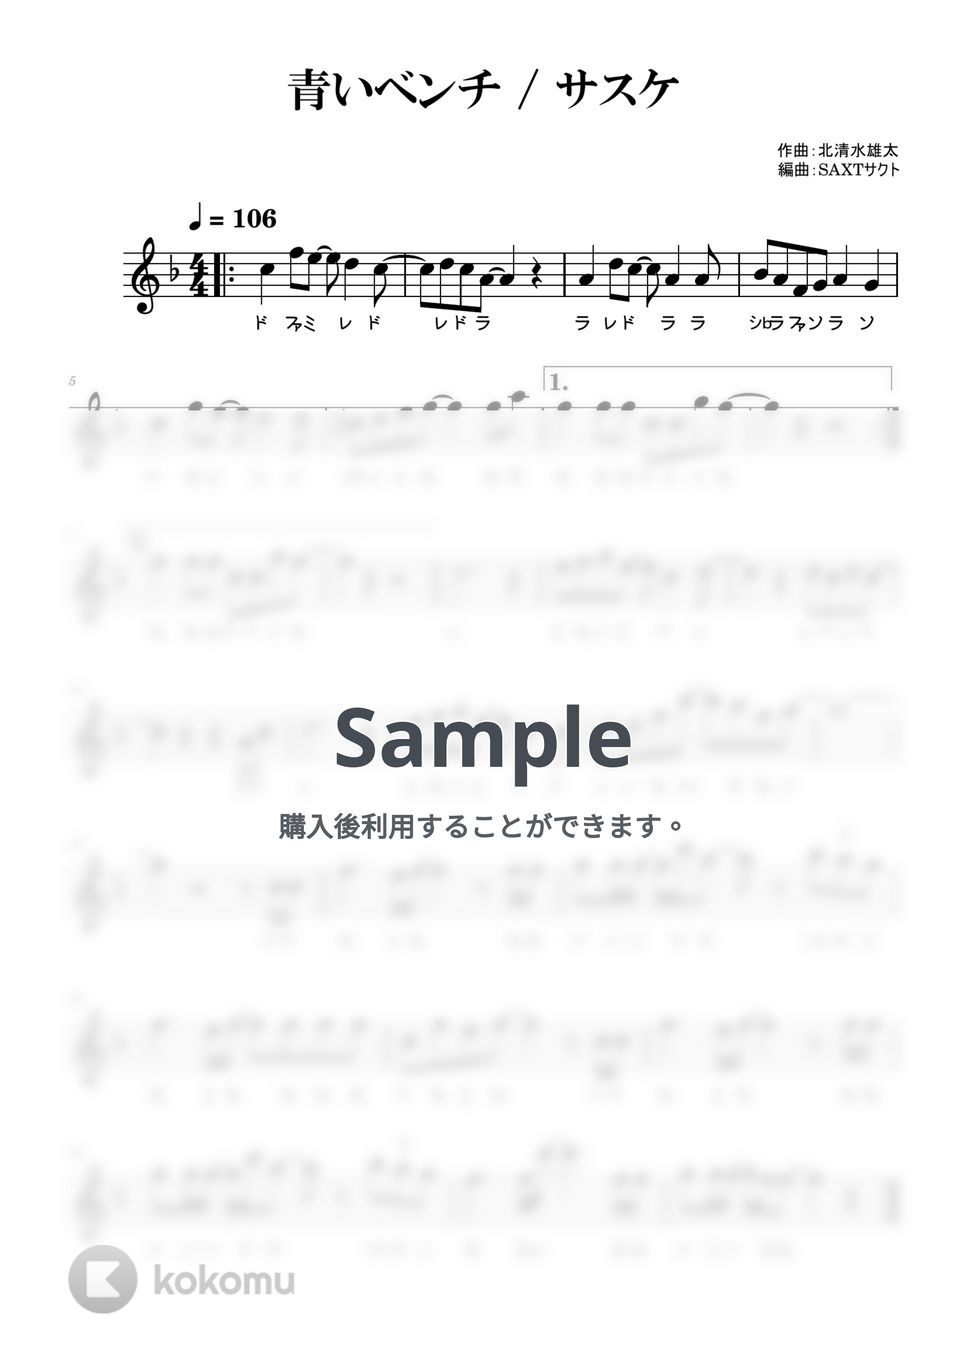 サスケ - 青いベンチ (めちゃラク譜・ドレミあり) by SAXT